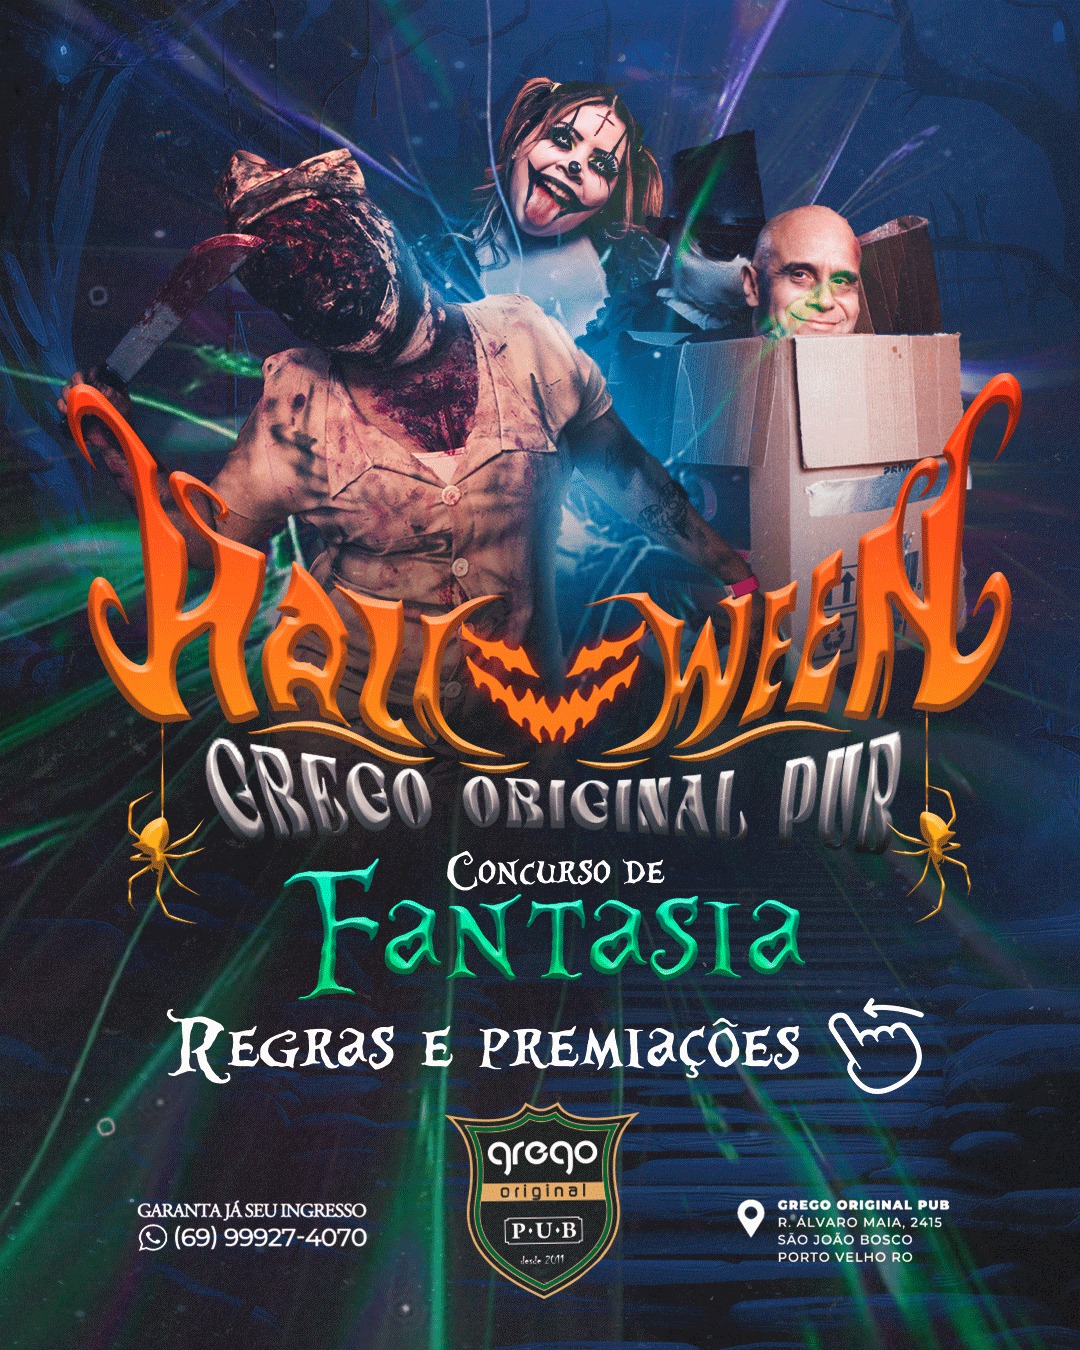 Agenda News: Grego Original Pub apresenta Halloween com concurso de fantasia, por Renata 